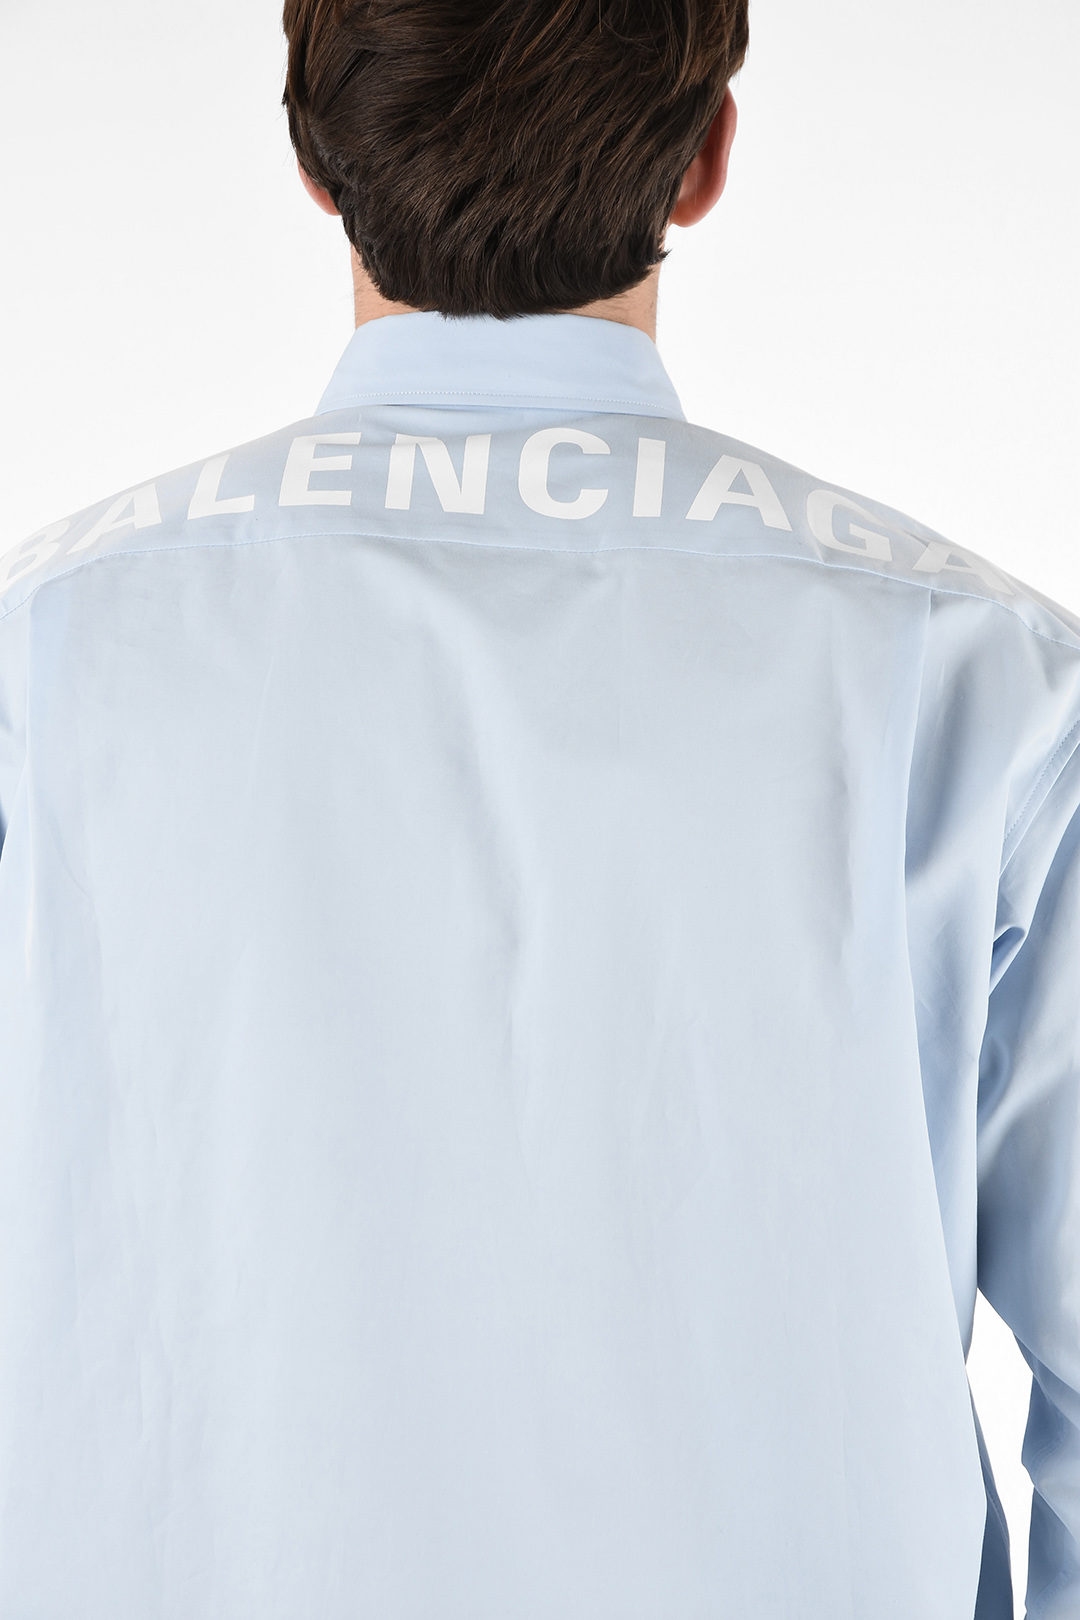 Balenciaga logo print long sleeve ...